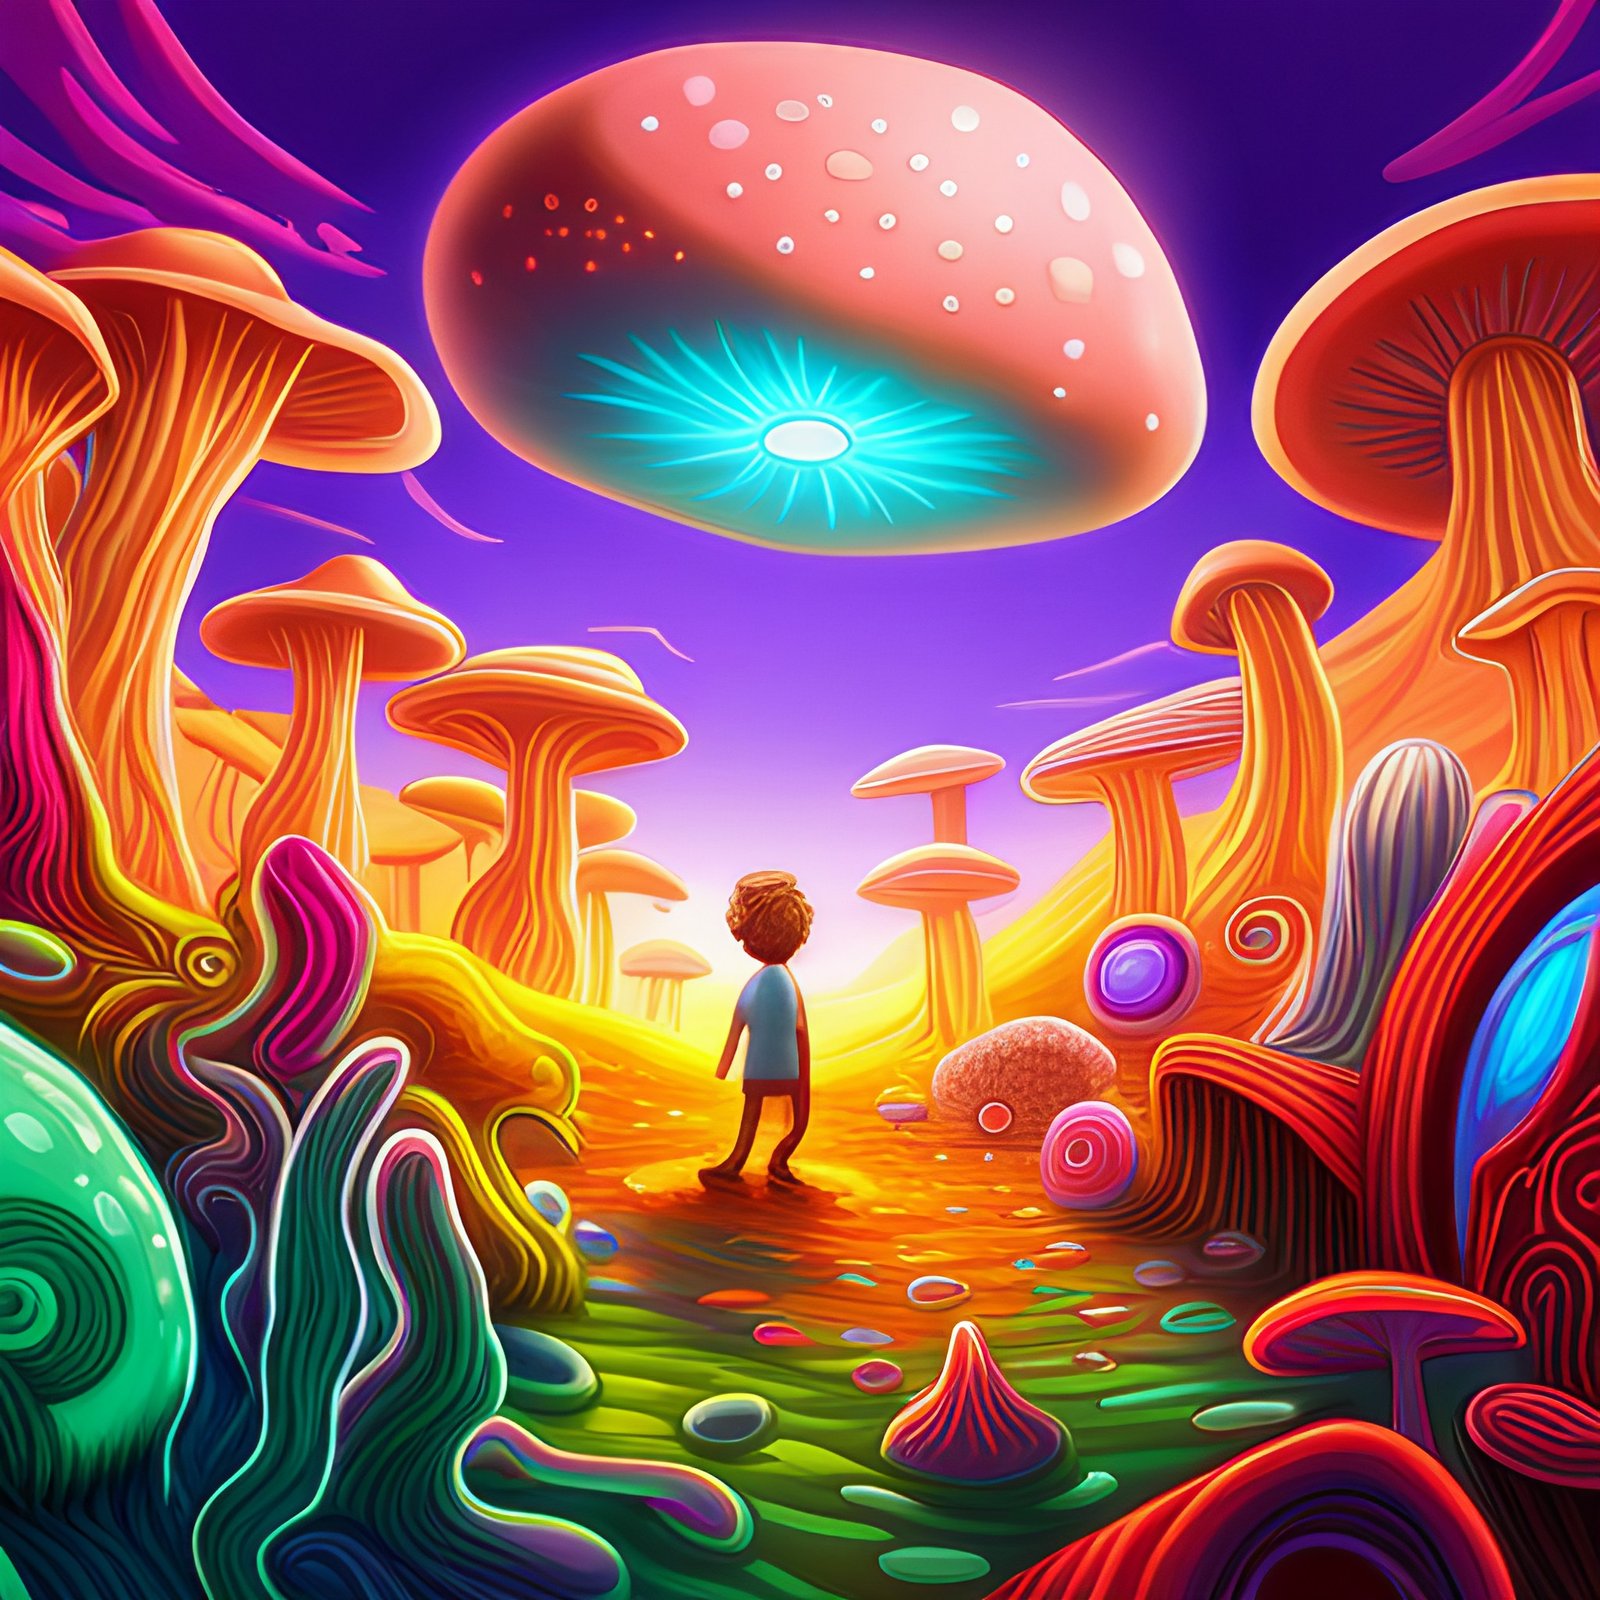 California mushrooms